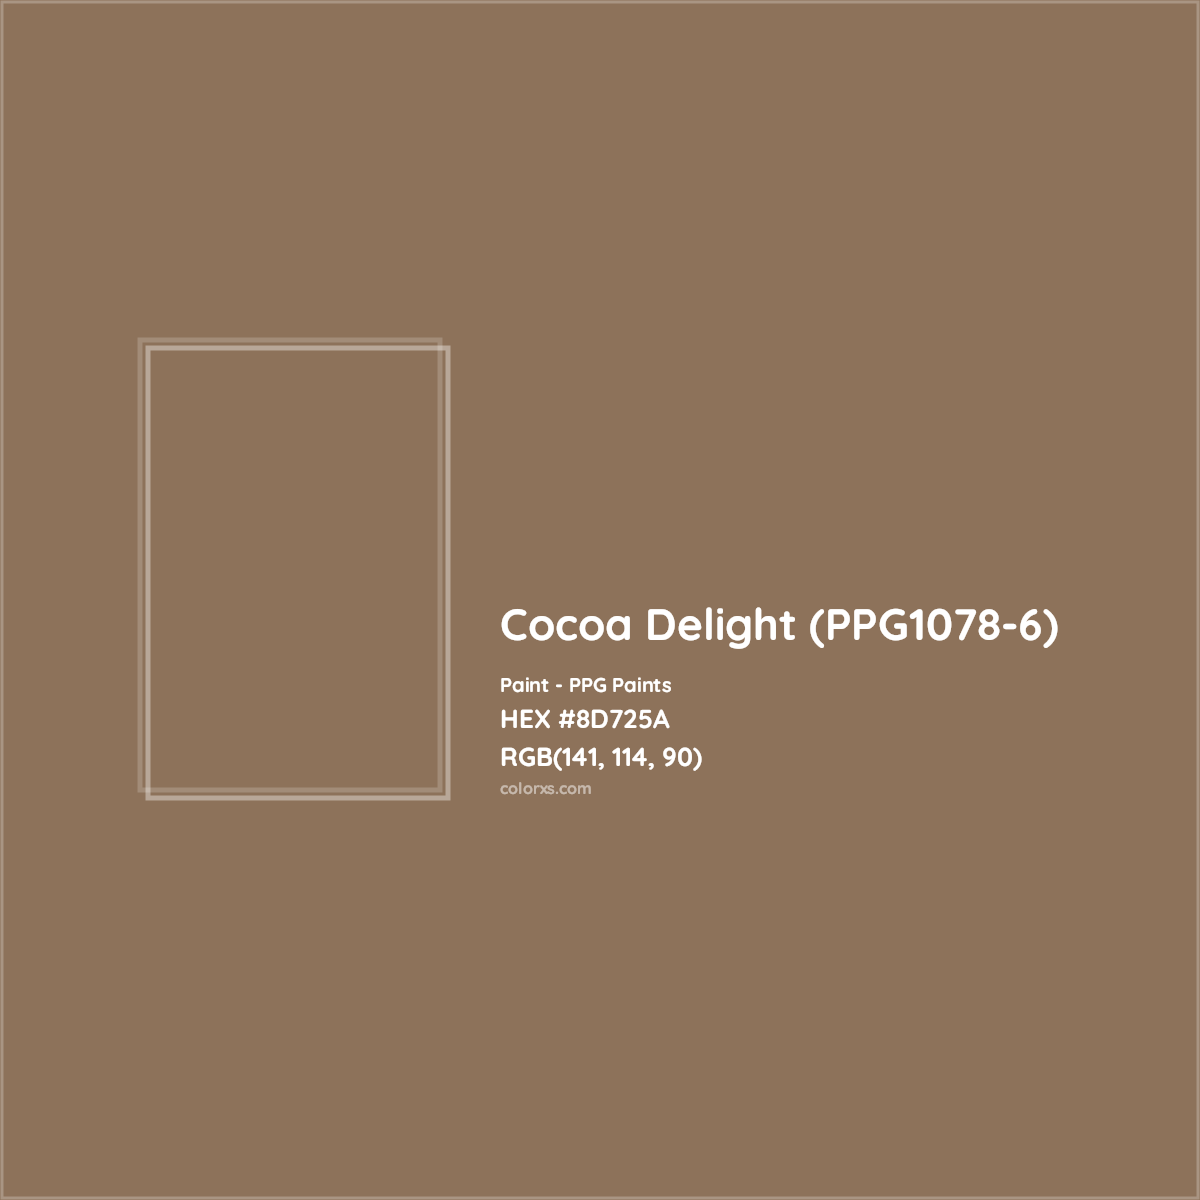 HEX #8D725A Cocoa Delight (PPG1078-6) Paint PPG Paints - Color Code